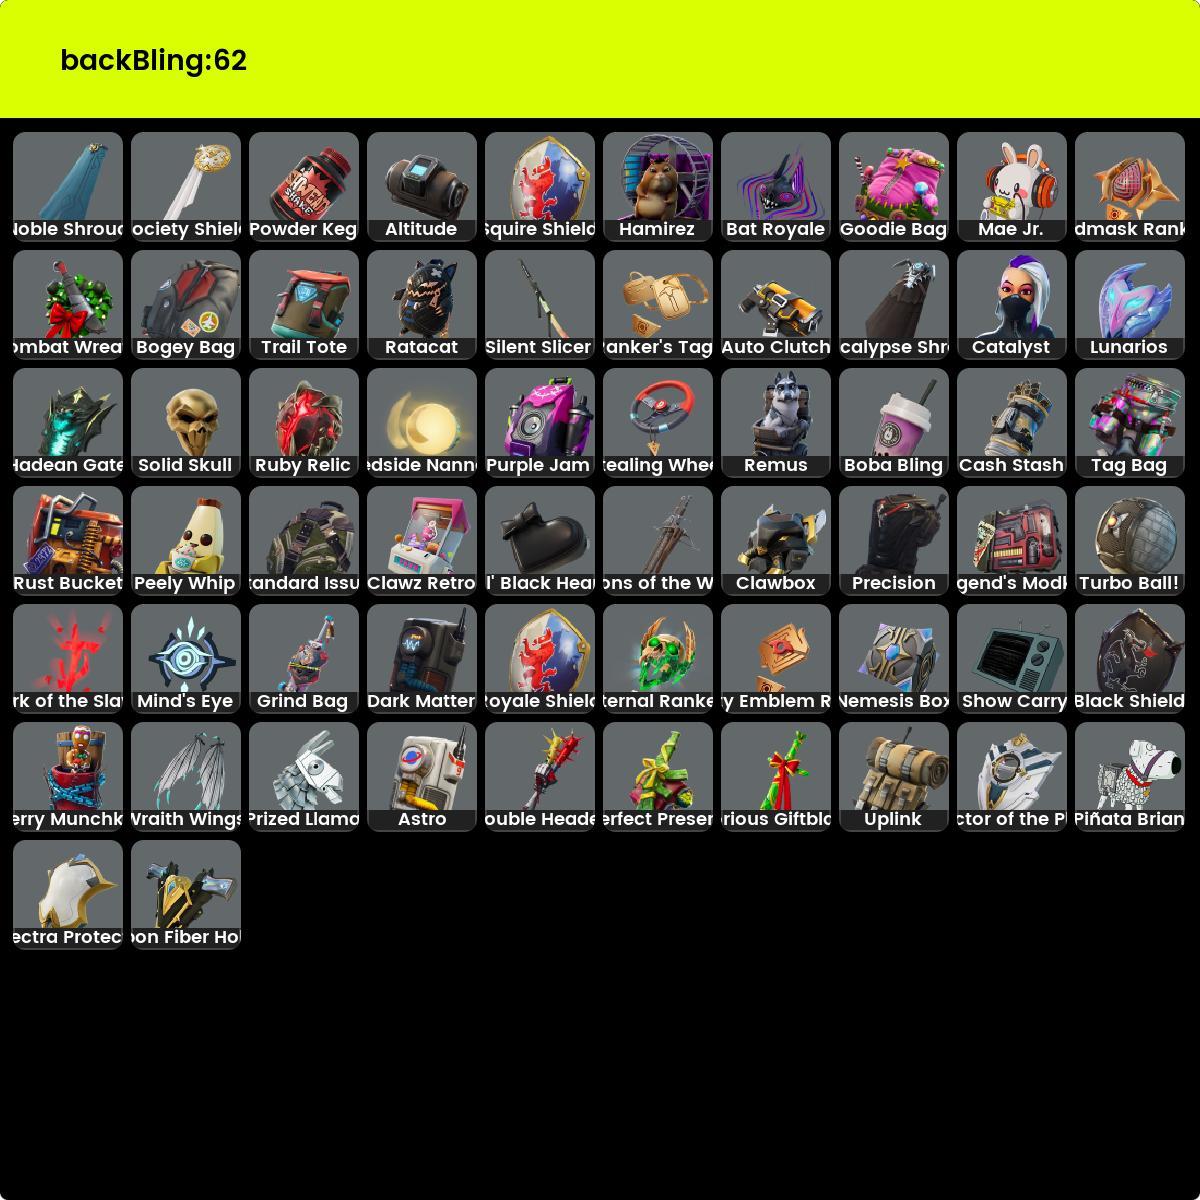 (xbox, PSN, PC) 48 skins, Noir Knight + Reaper, Royal Knight, frais, cool main + garantie de remboursement